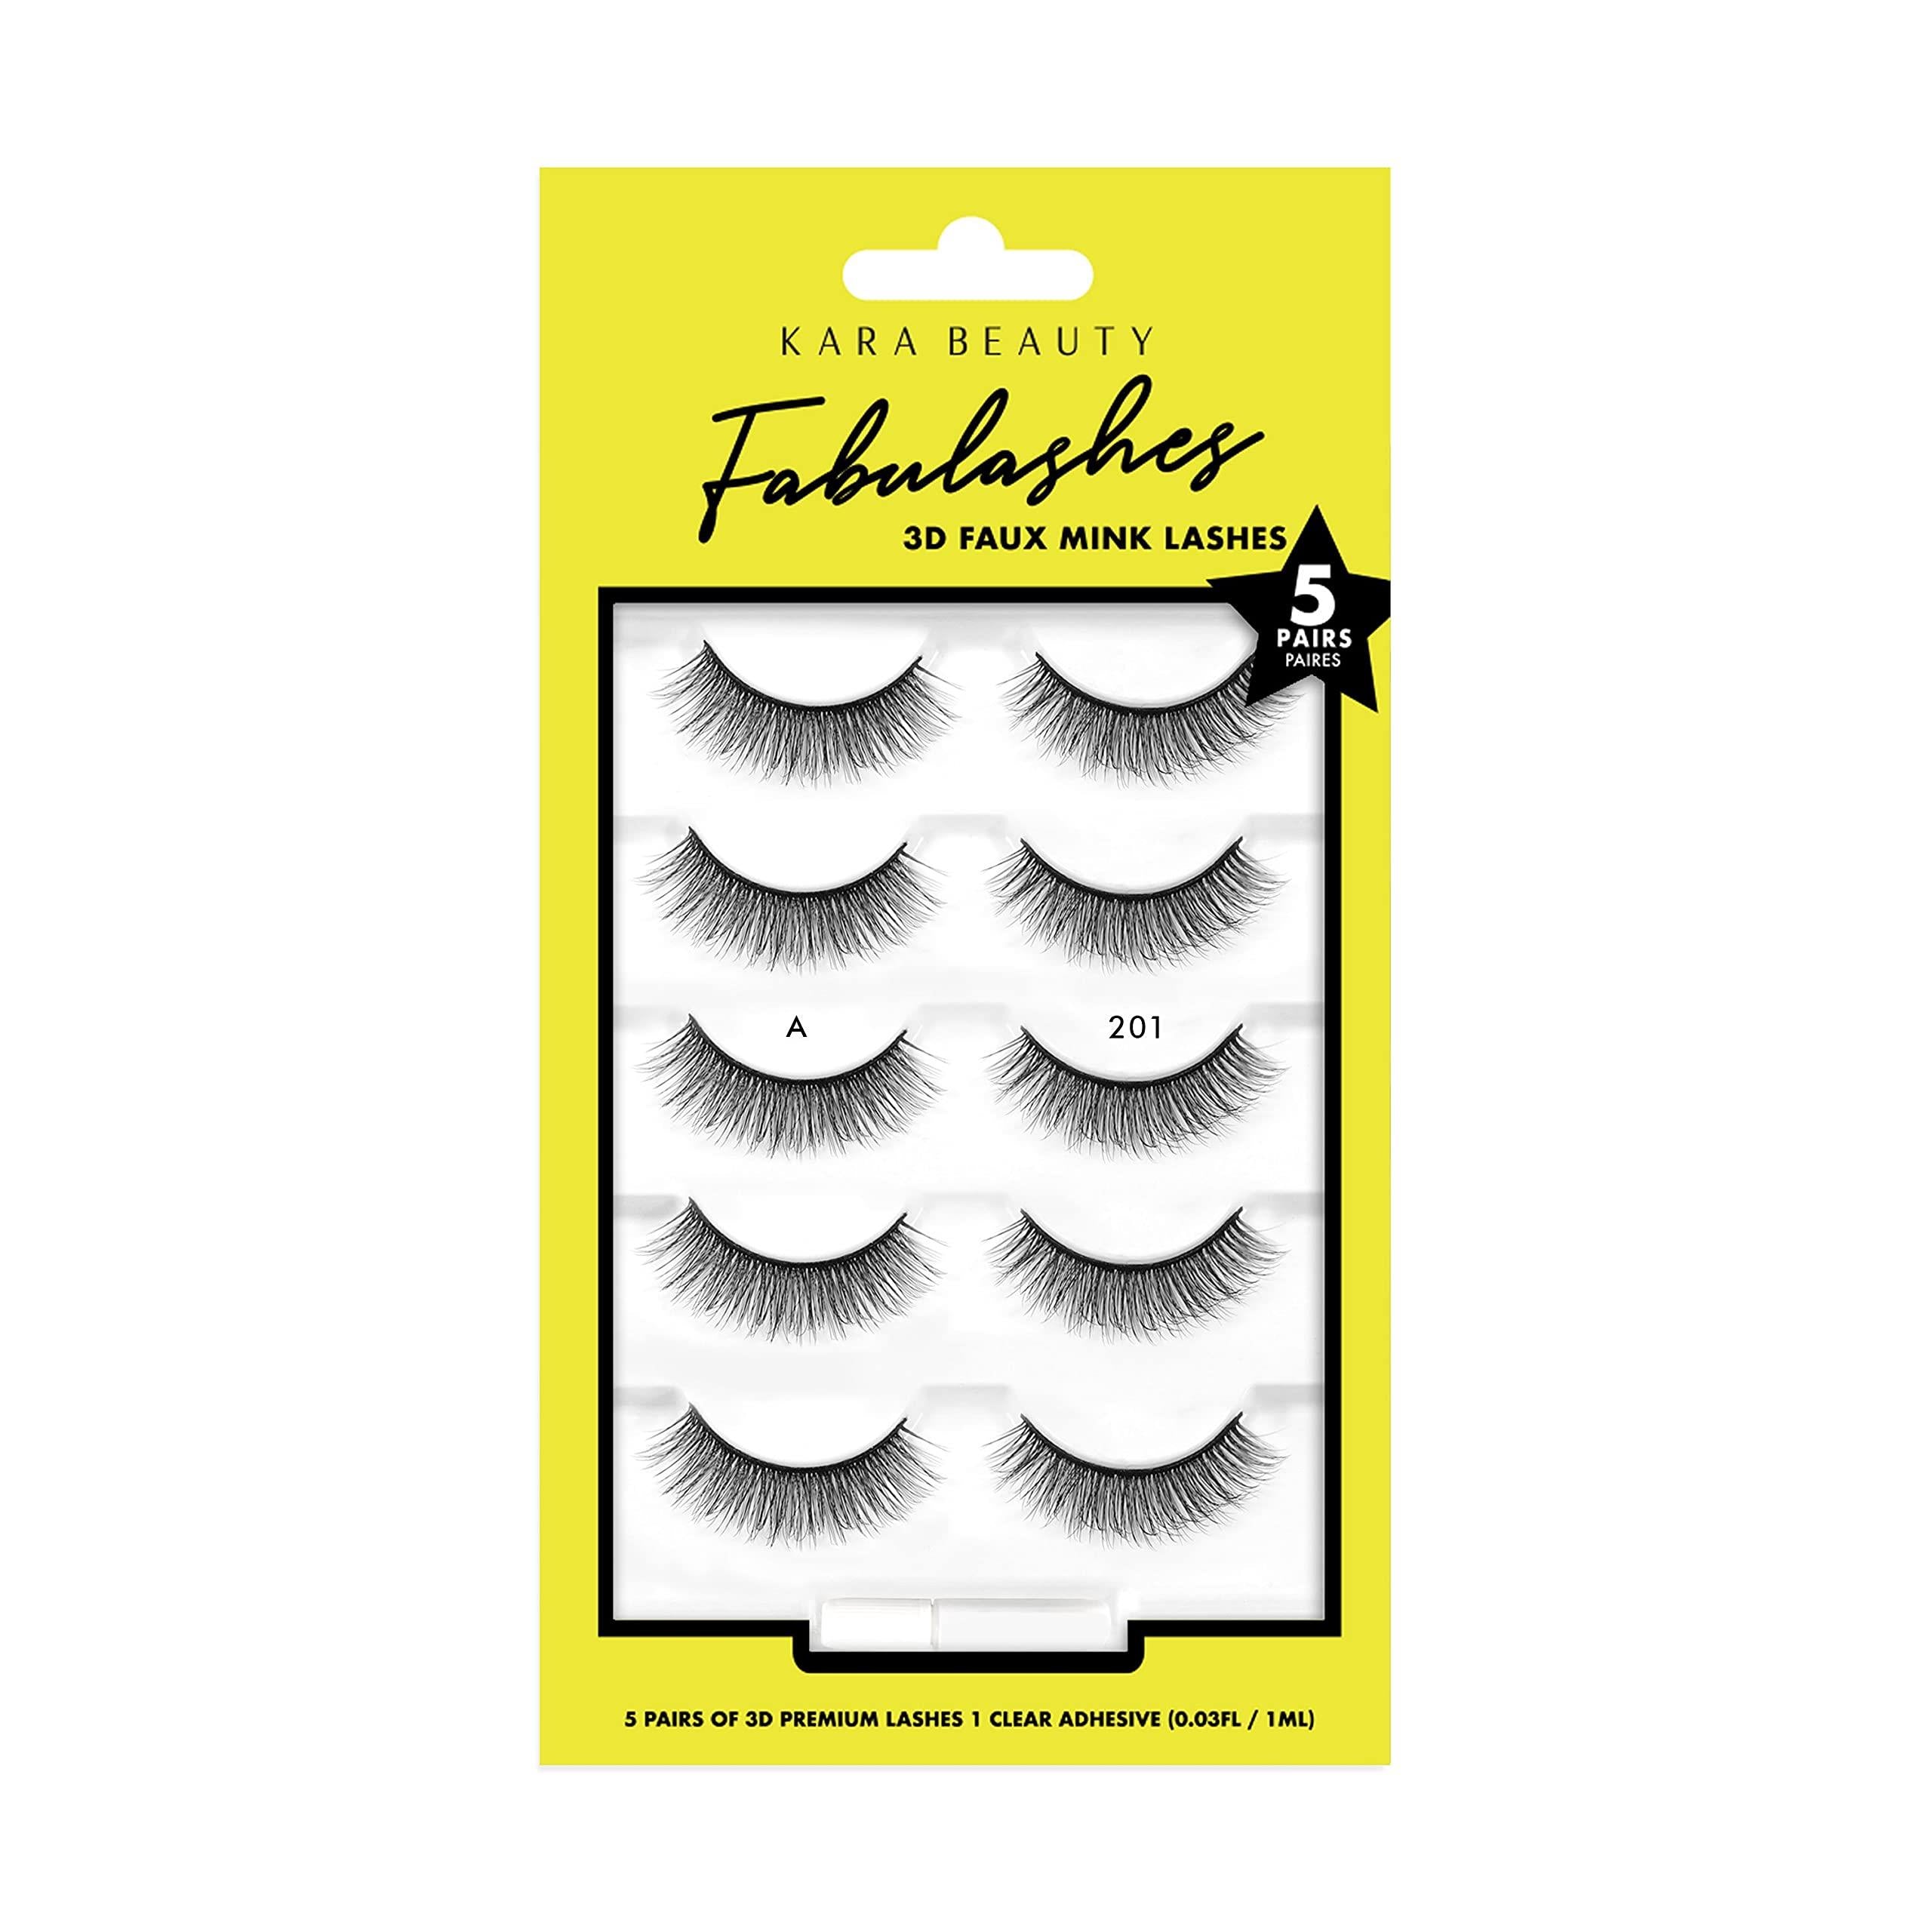 KARA BEAUTY FABULASHES 5 IDENTICAL PAIRS Multi-pack 3D Faux Mink False Eyelashes - Style KA5201